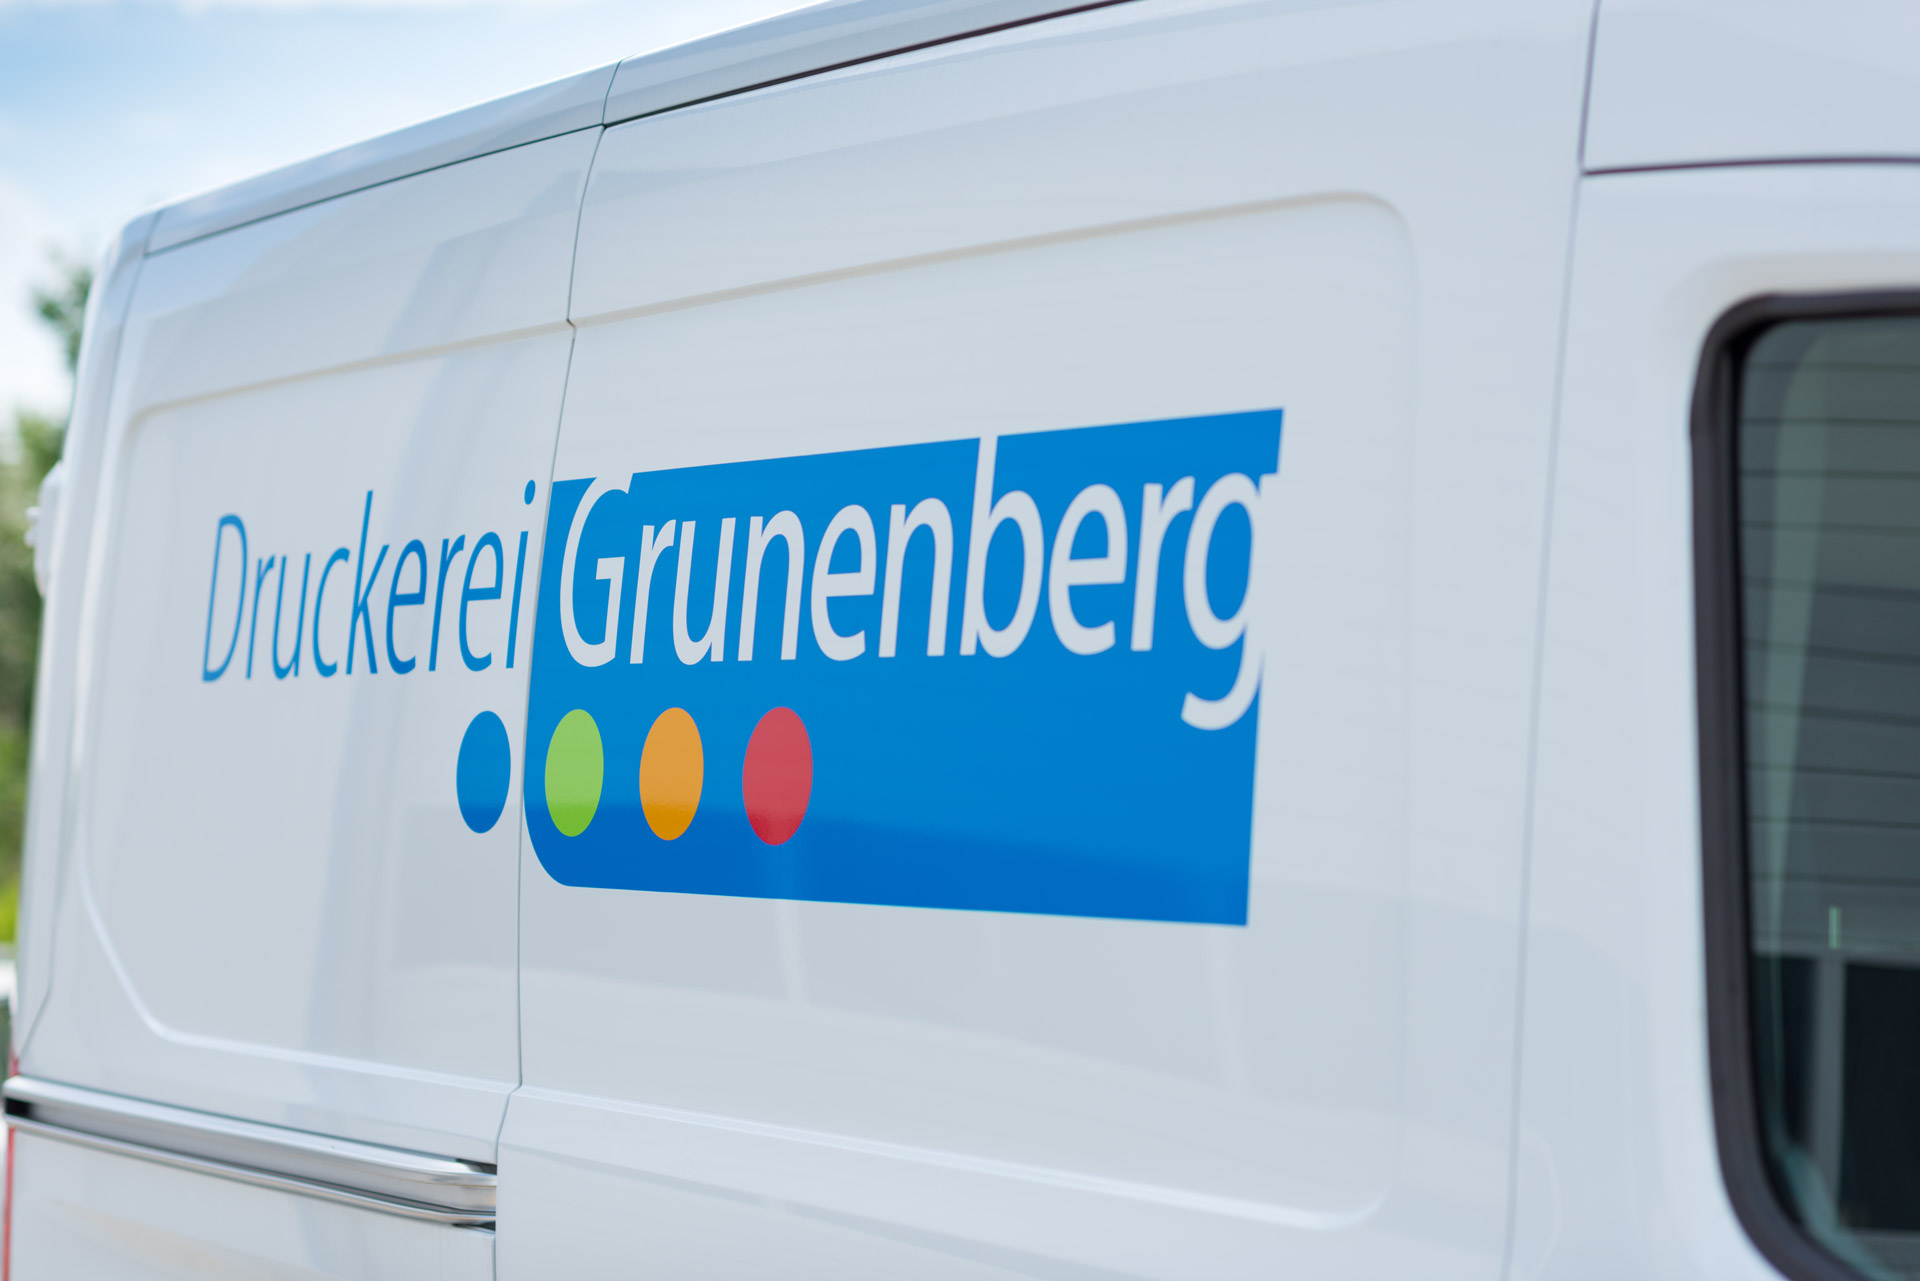 Grunenberg Lieferwagen